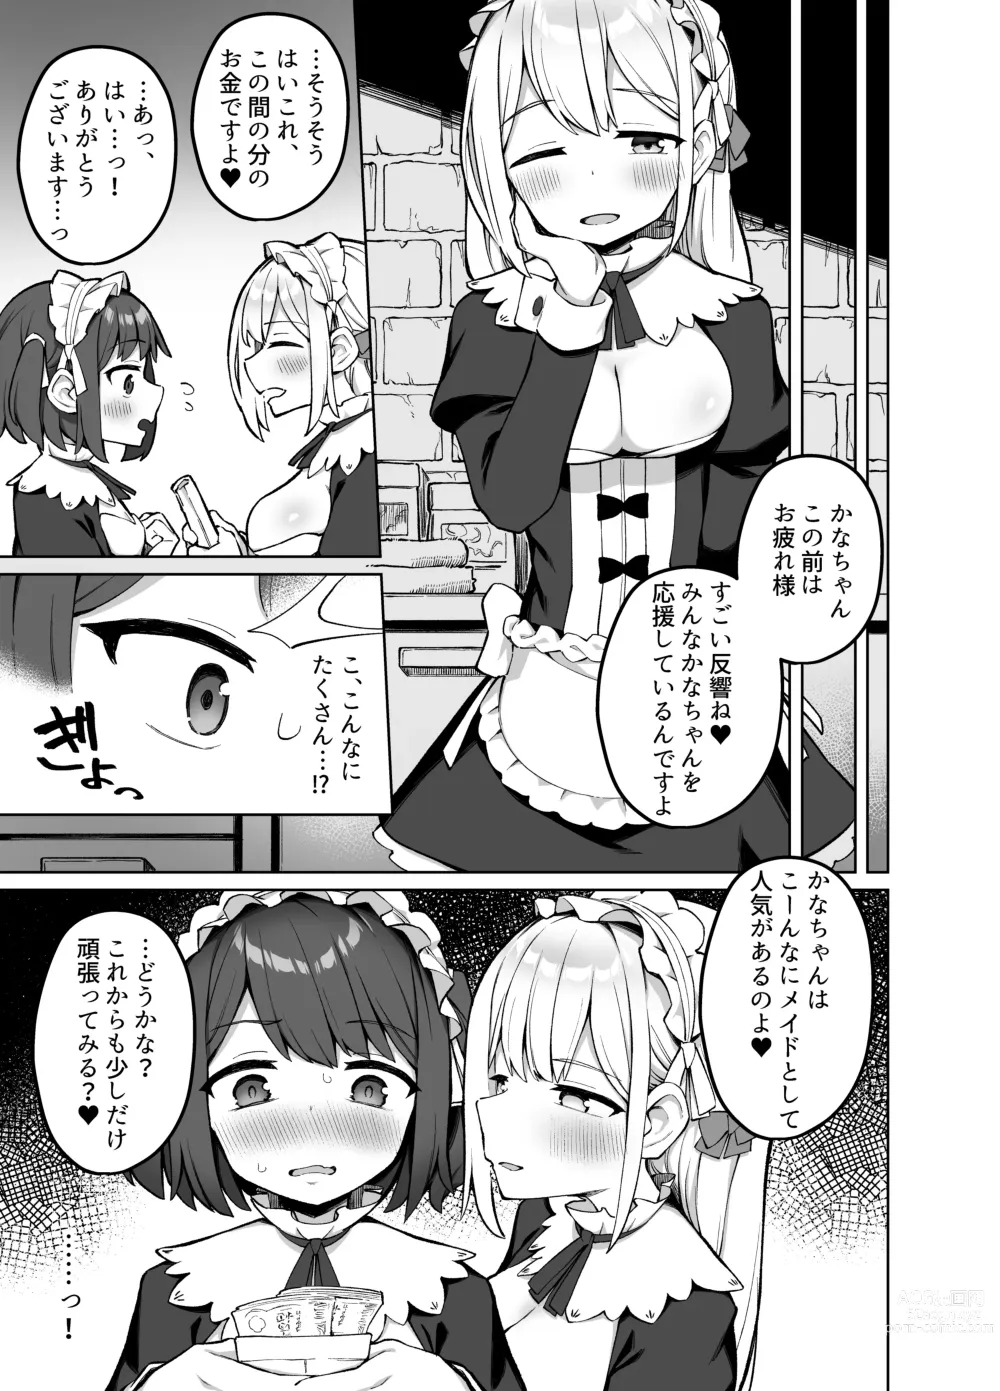 Page 14 of doujinshi Maid Kissa no Ura Settai Service